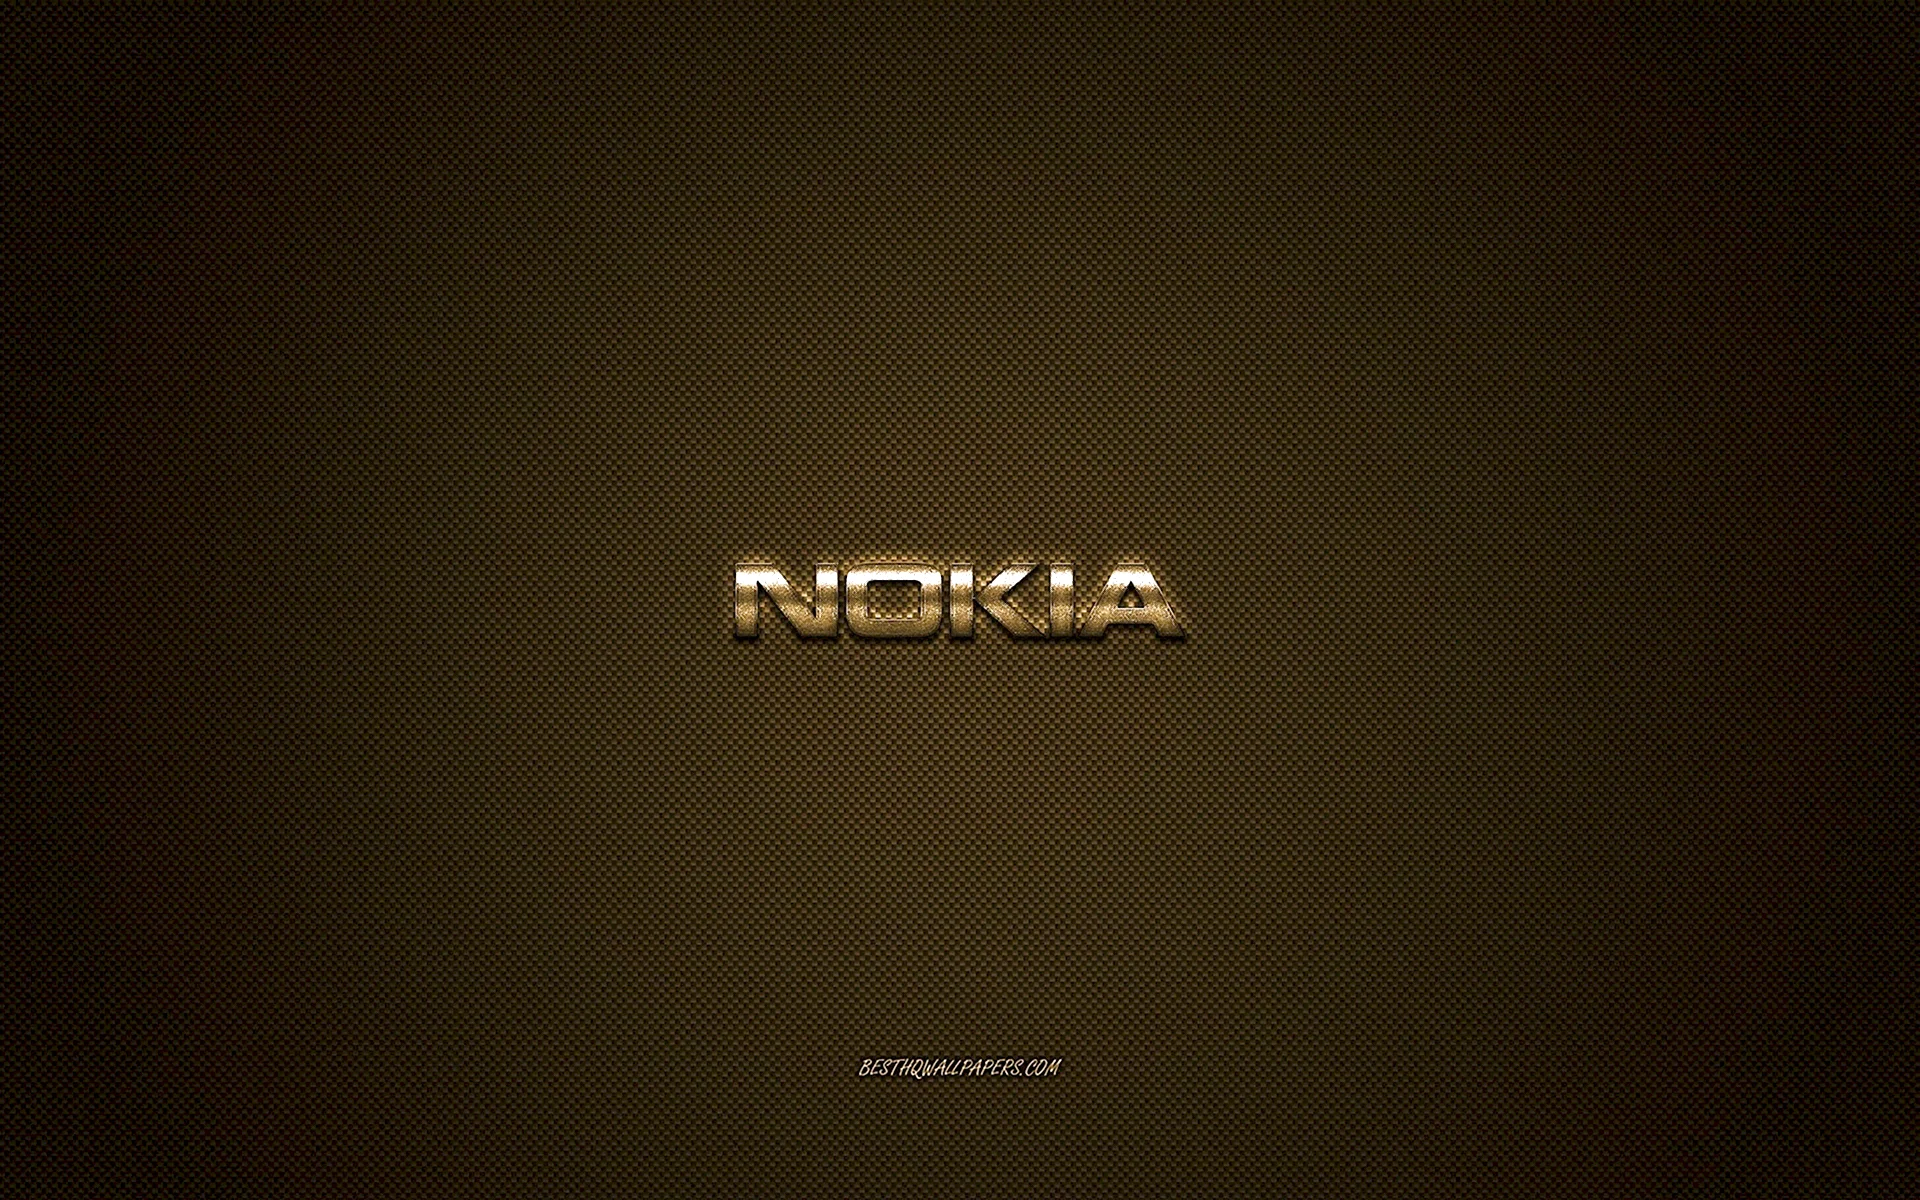 Обои на телефон Nokia